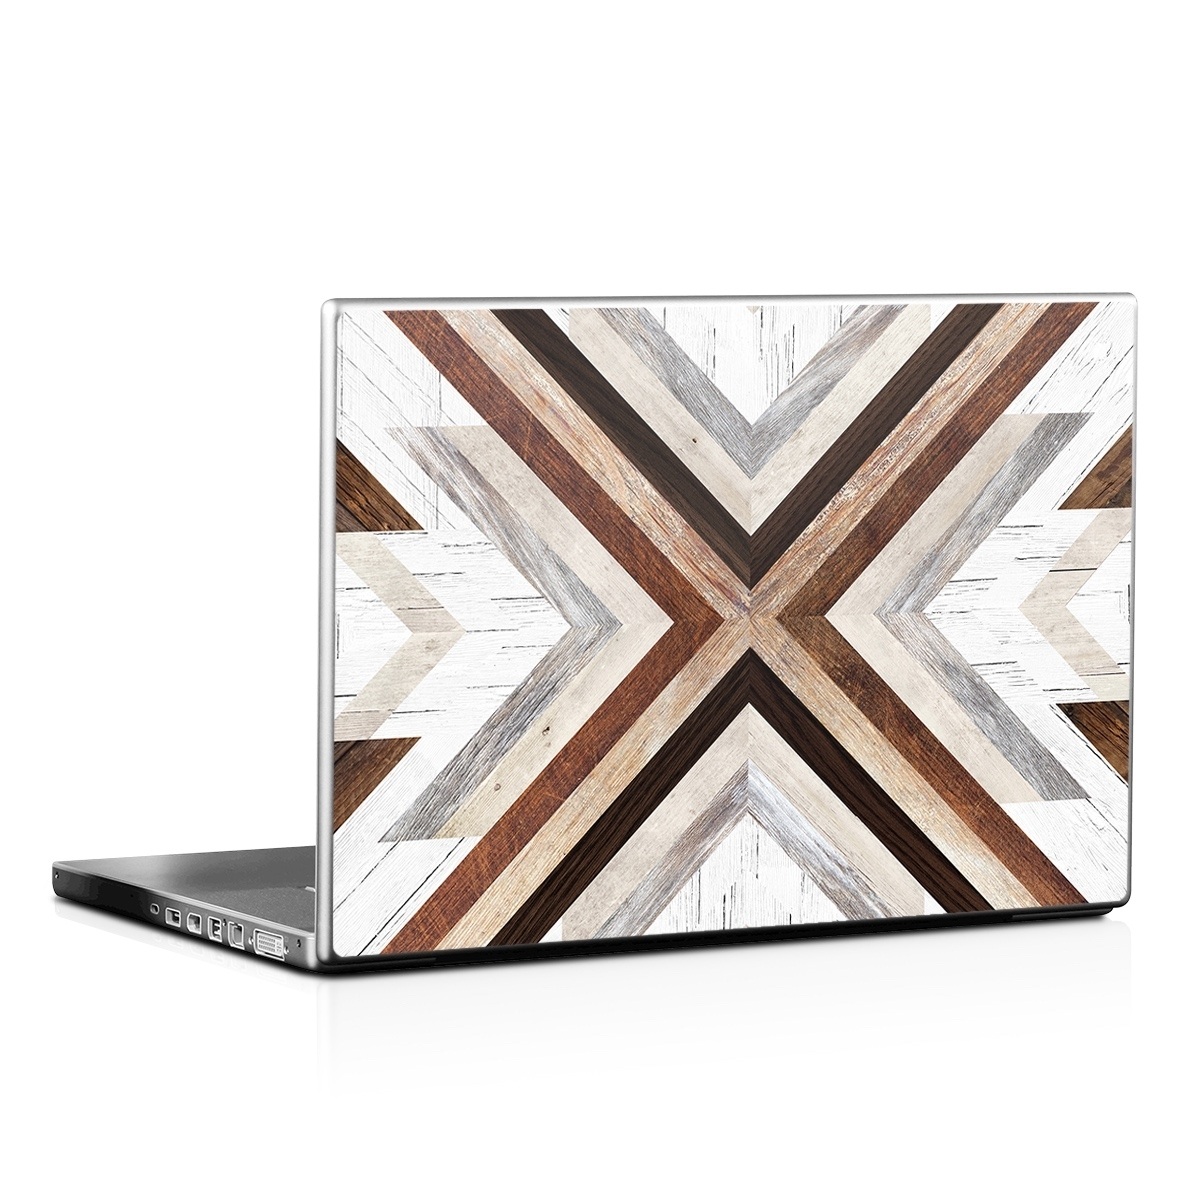 Laptop Skin - Timber (Image 1)